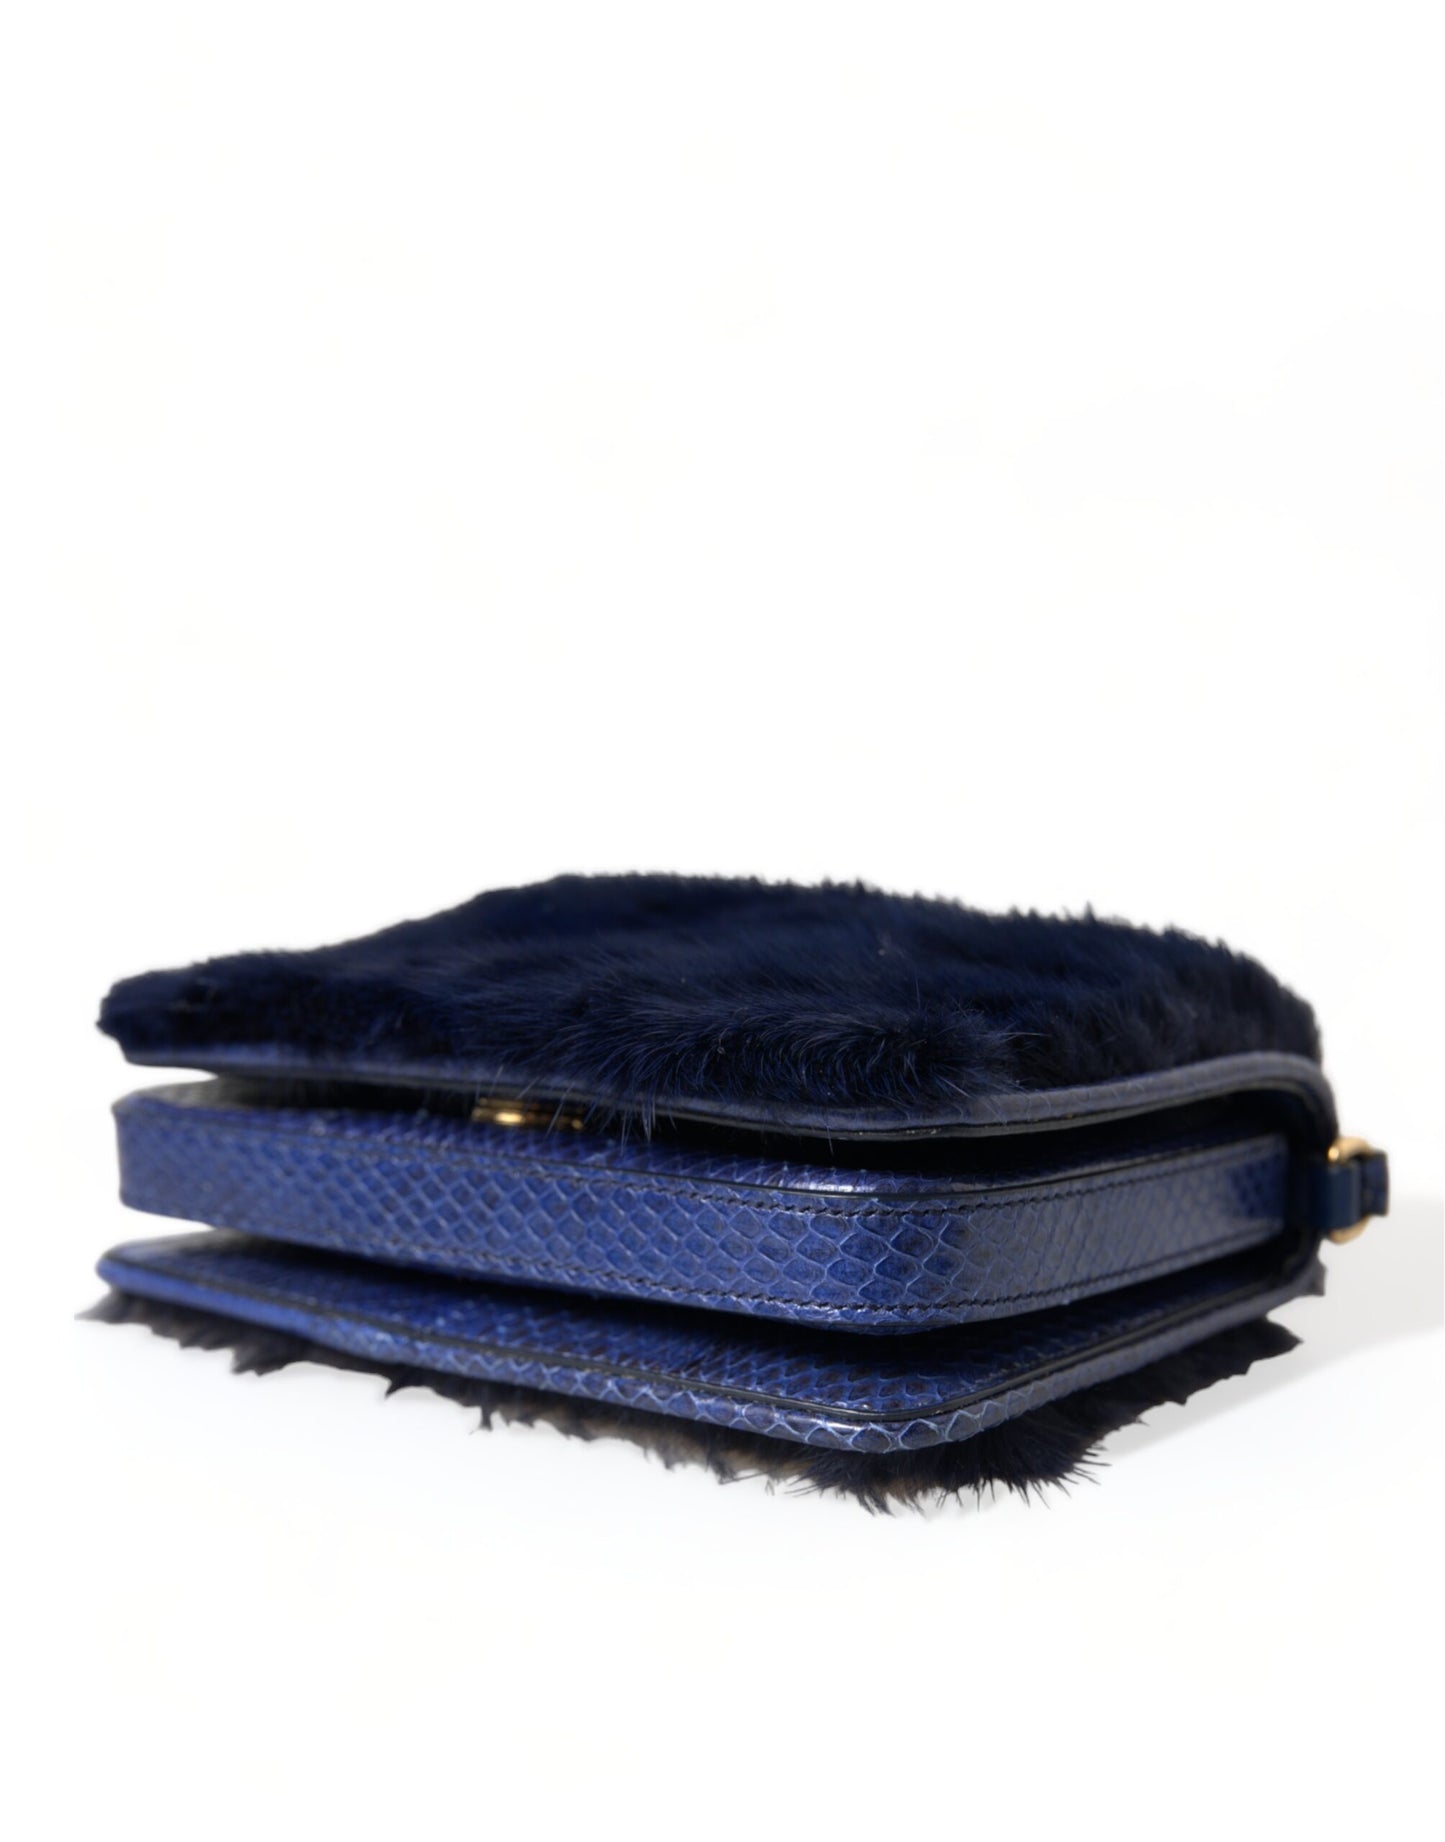 Exquisite Blue Mink Fur Shoulder Bag